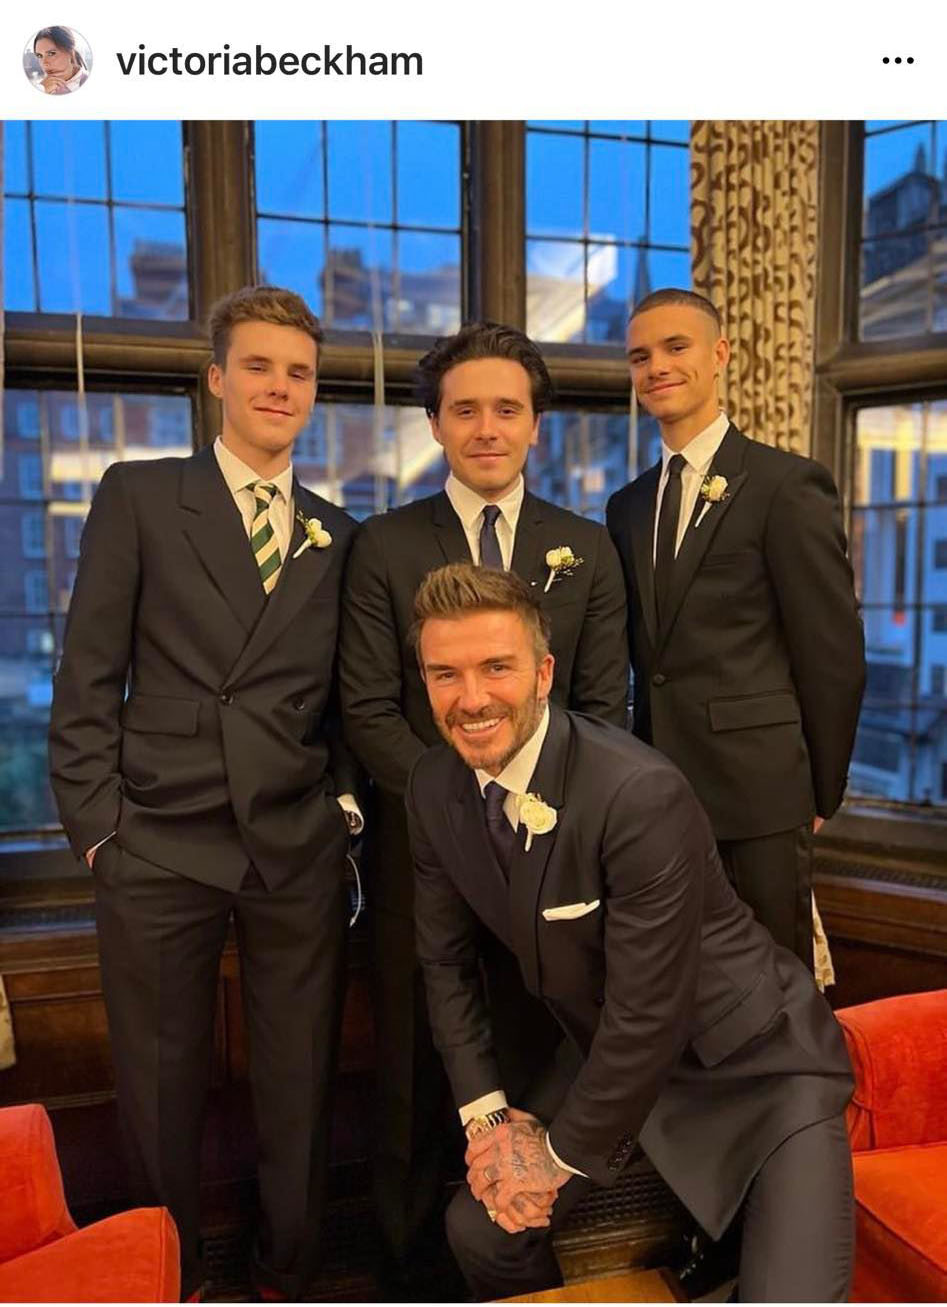 U50, David Beckham vẫn được nhận xét như anh em khi chụp ảnh cùng 3 quý tử - 2